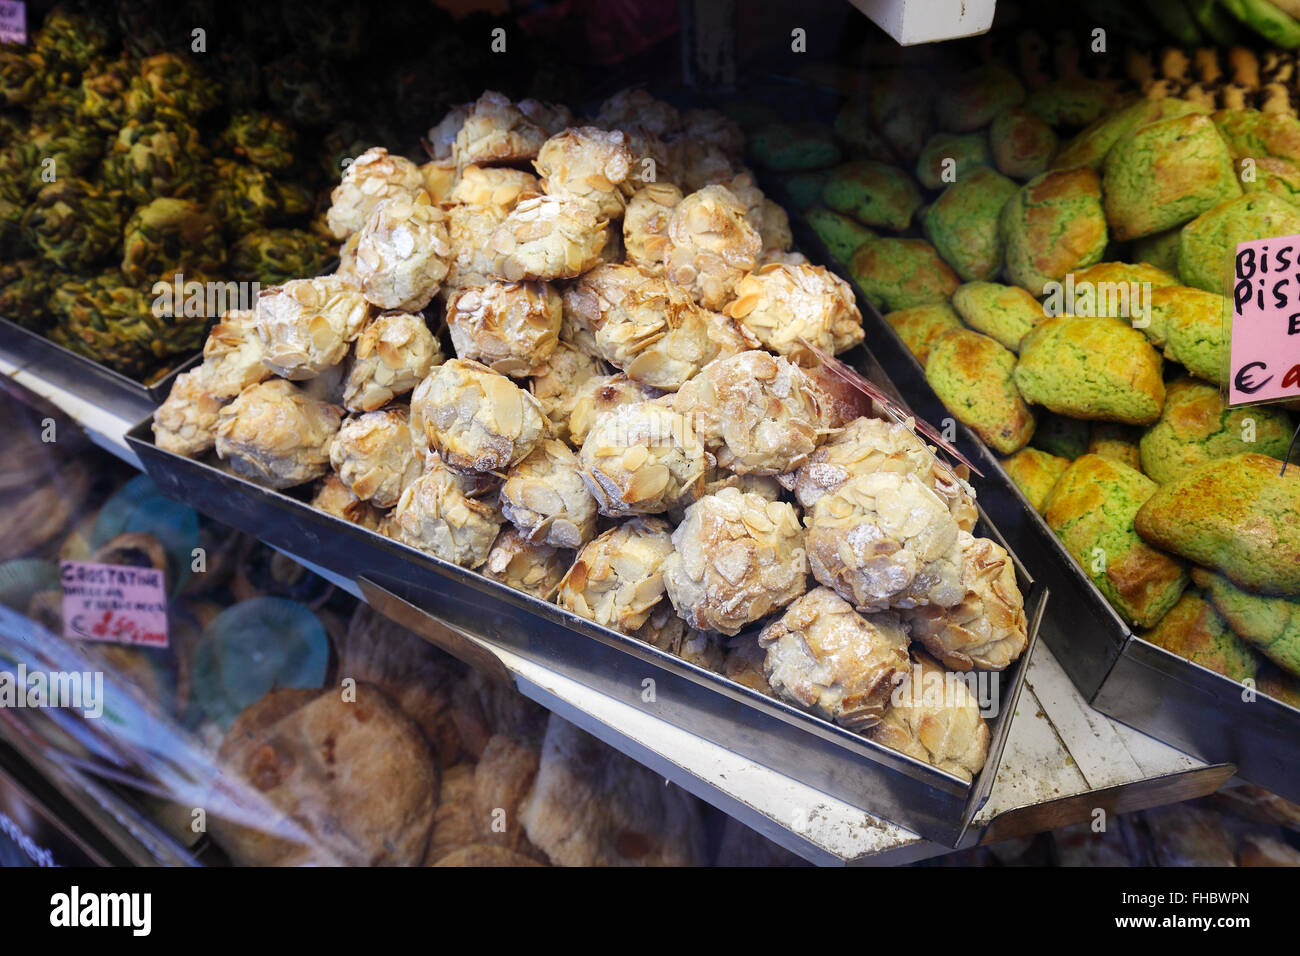 pastries in a deli shop in Rome Stock Photo